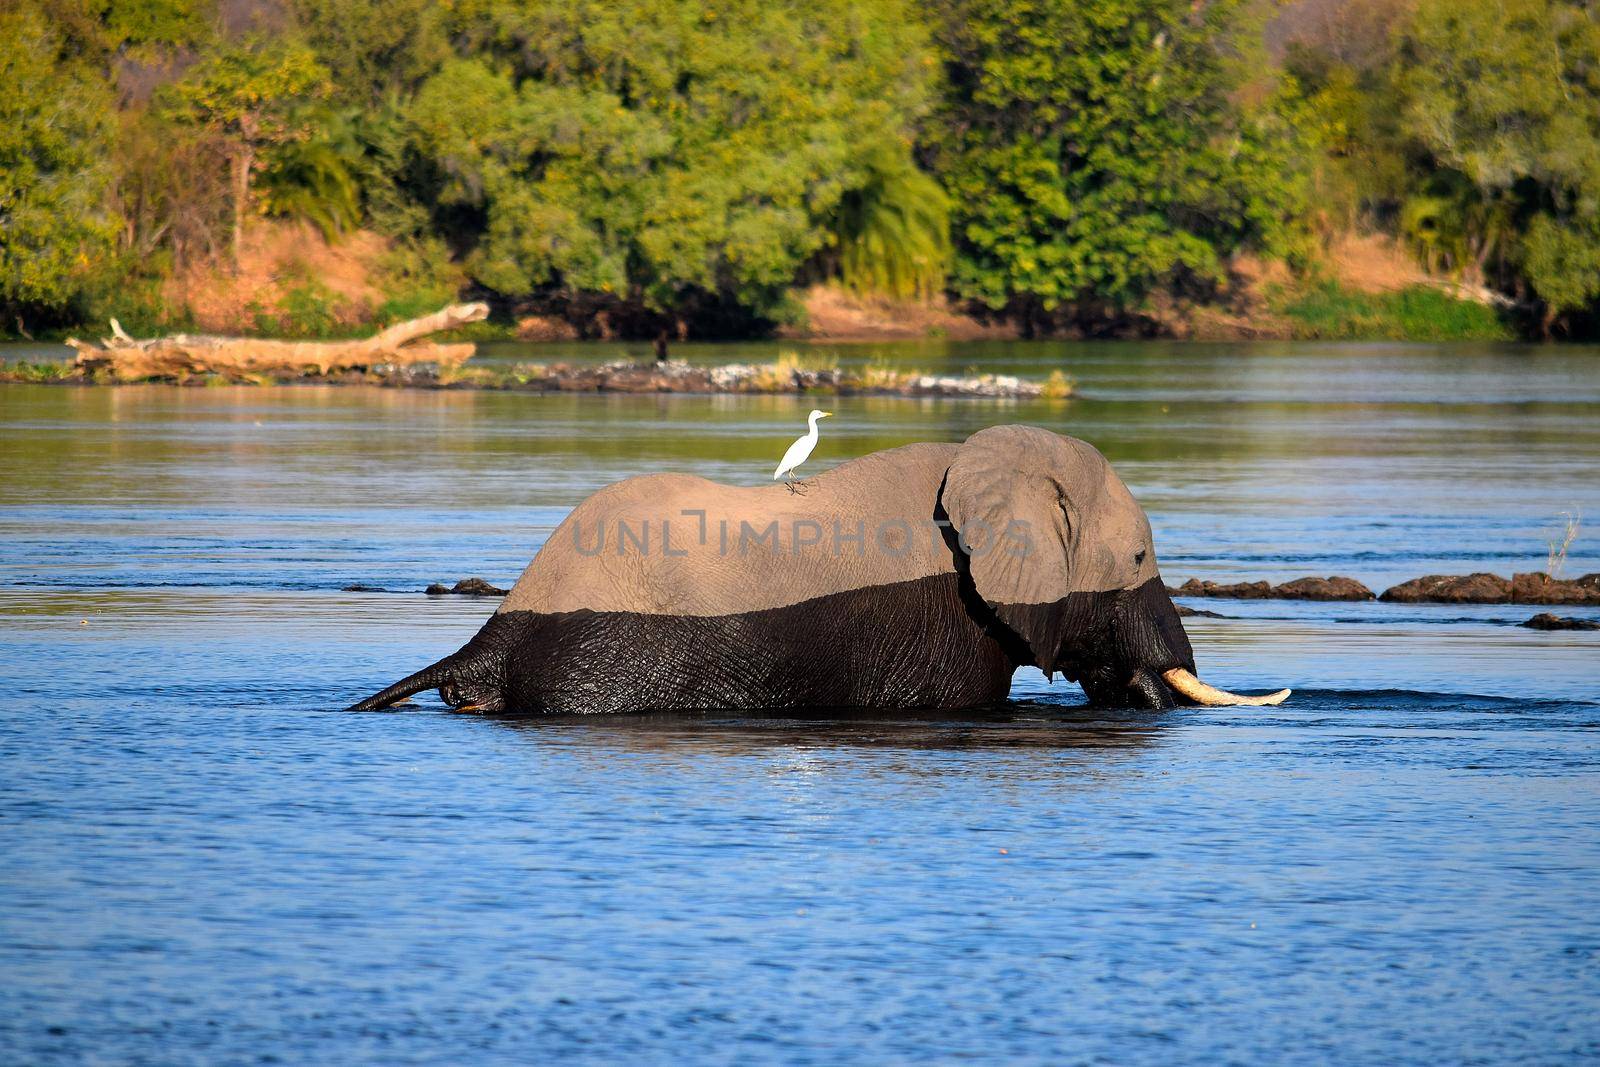 Elephant in the Zambezi River by silentstock639